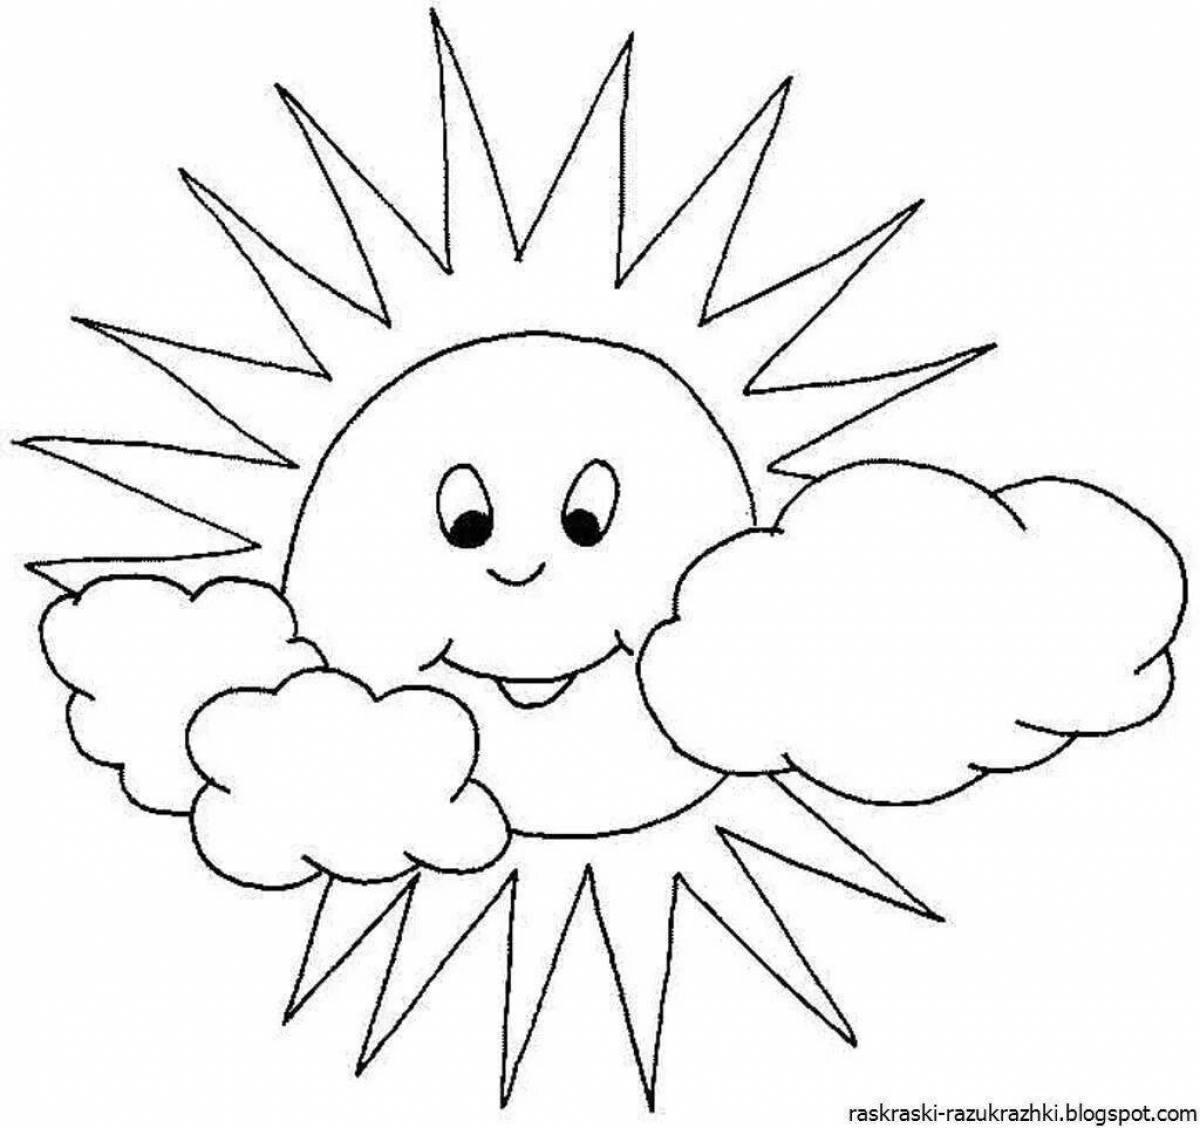 Веселая раскраска солнышко для детей 4-5 лет